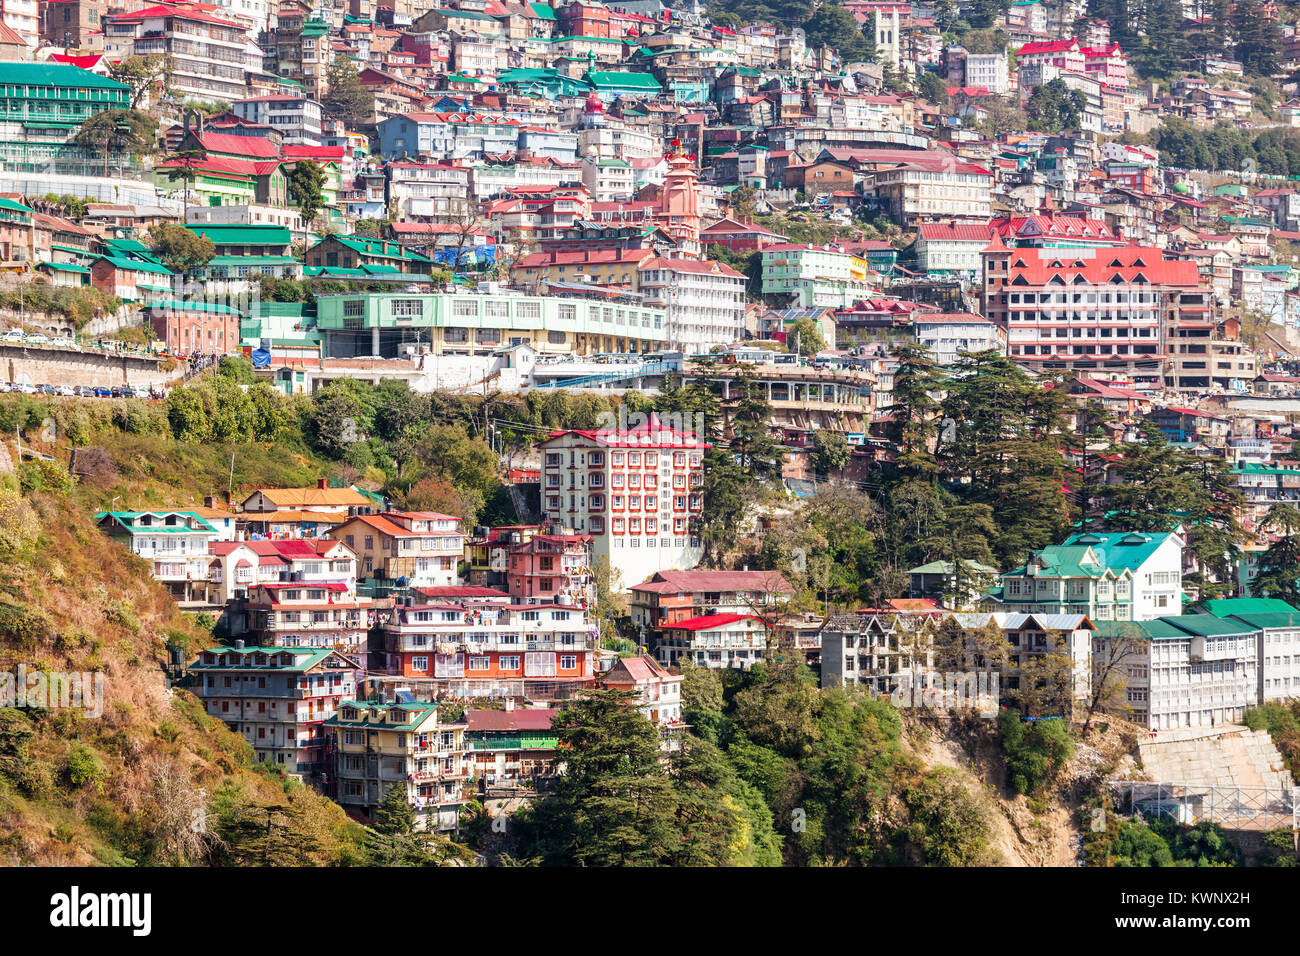 Shimla vue aérienne, c'est la capitale de l'état indien de l'Himachal Pradesh, situé dans le nord de l'Inde. Banque D'Images